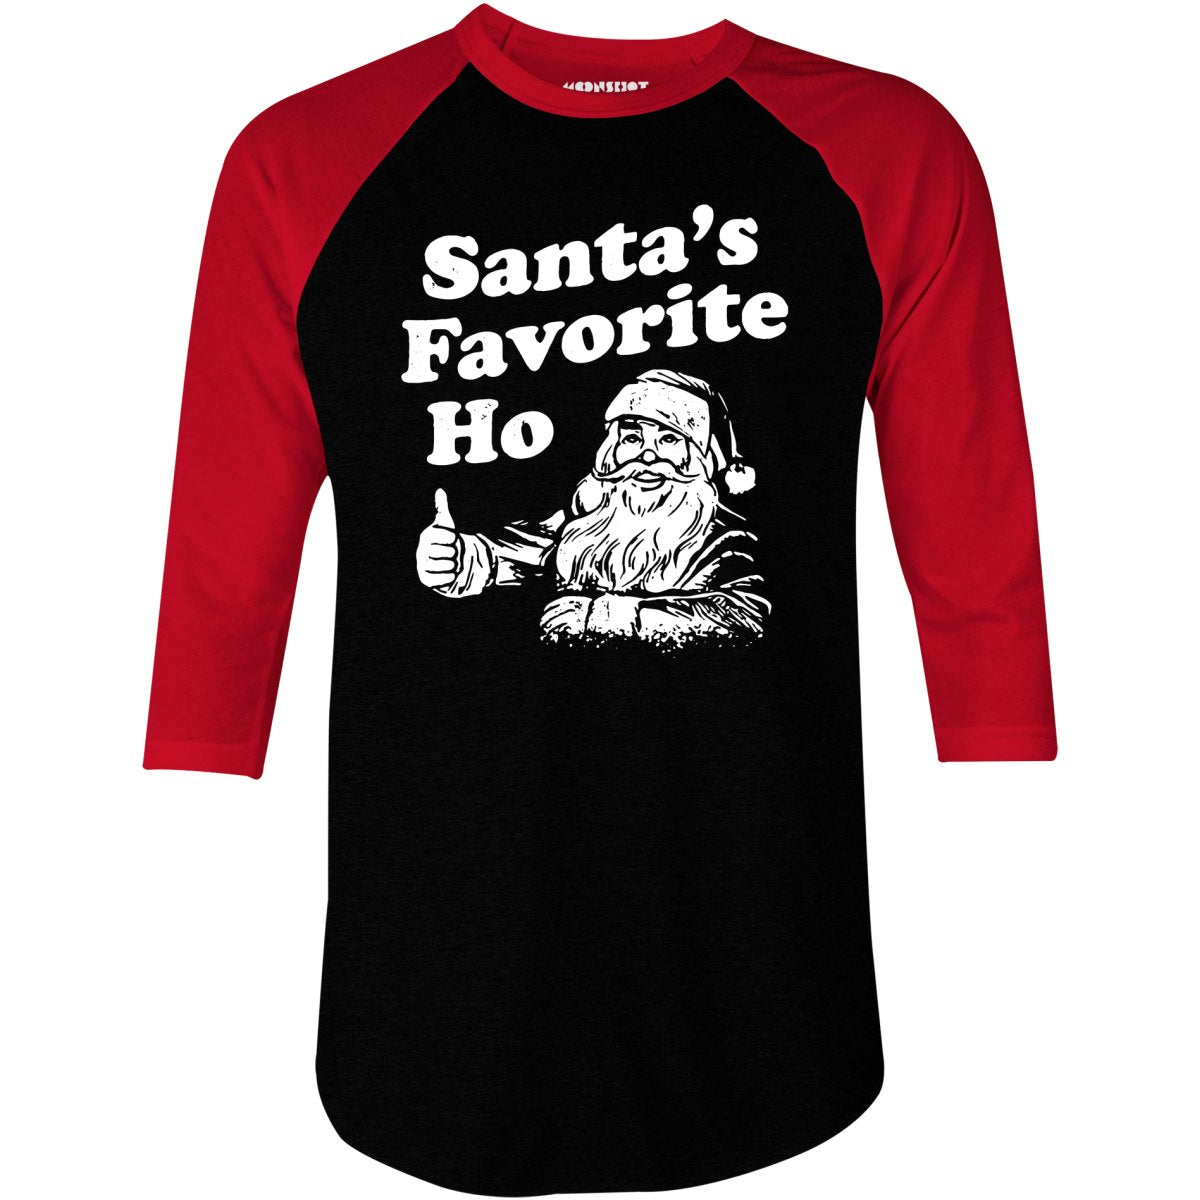 Santa's Favorite Ho - 3/4 Sleeve Raglan T-Shirt